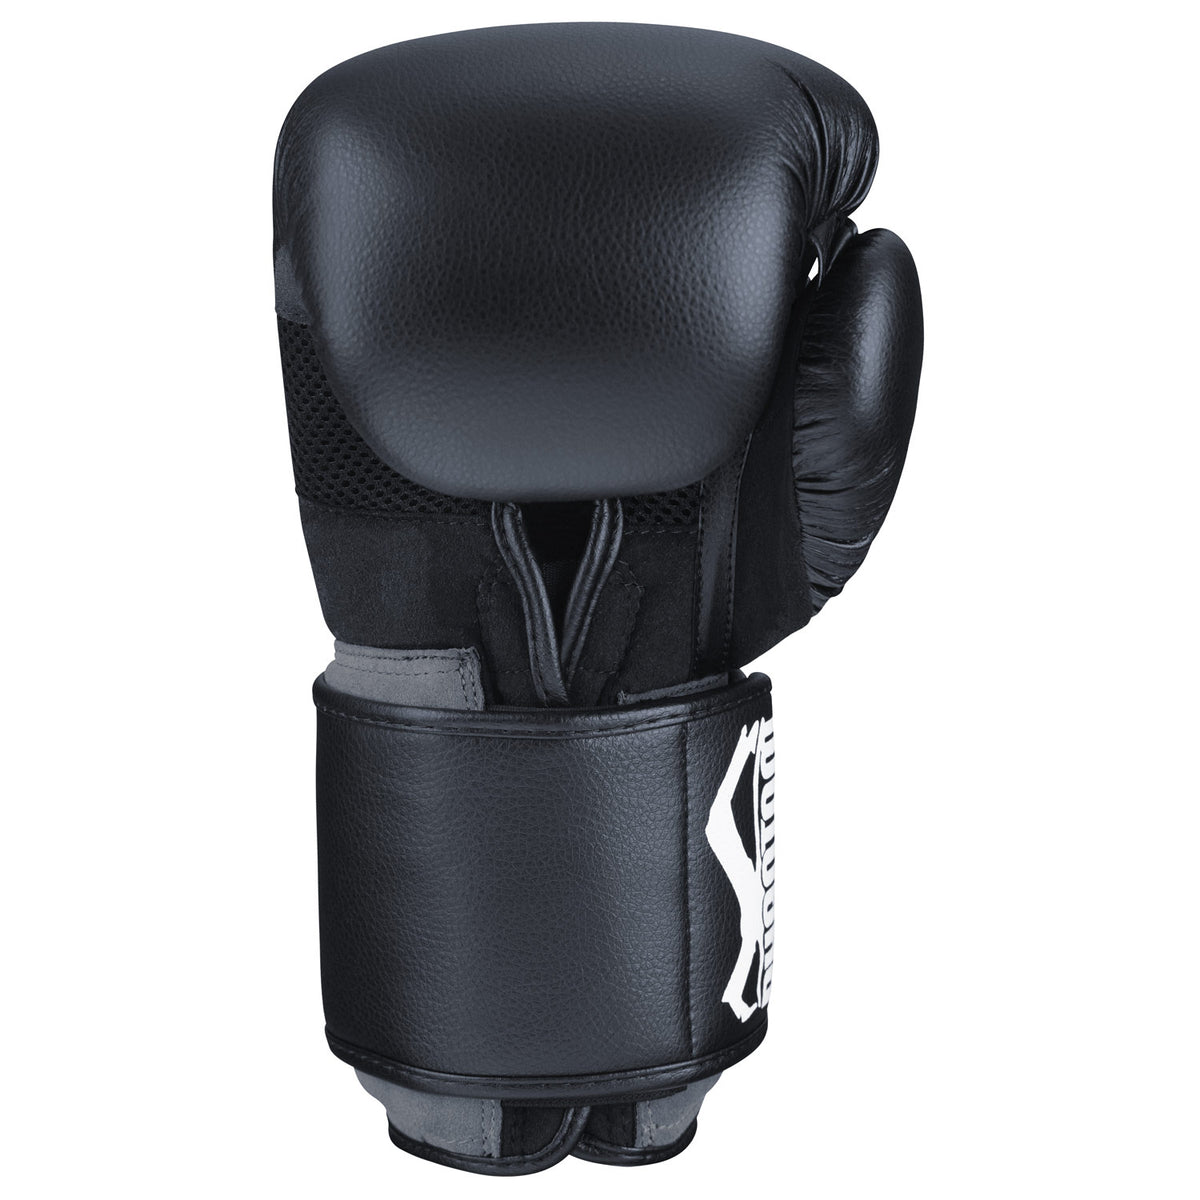 Die Innenseite der Phantom Elite ATF Boxhandschuhe ist mit einem luftdurchlässigen MESH Material ausgestattet für maximale Belüftung während des Trainings.